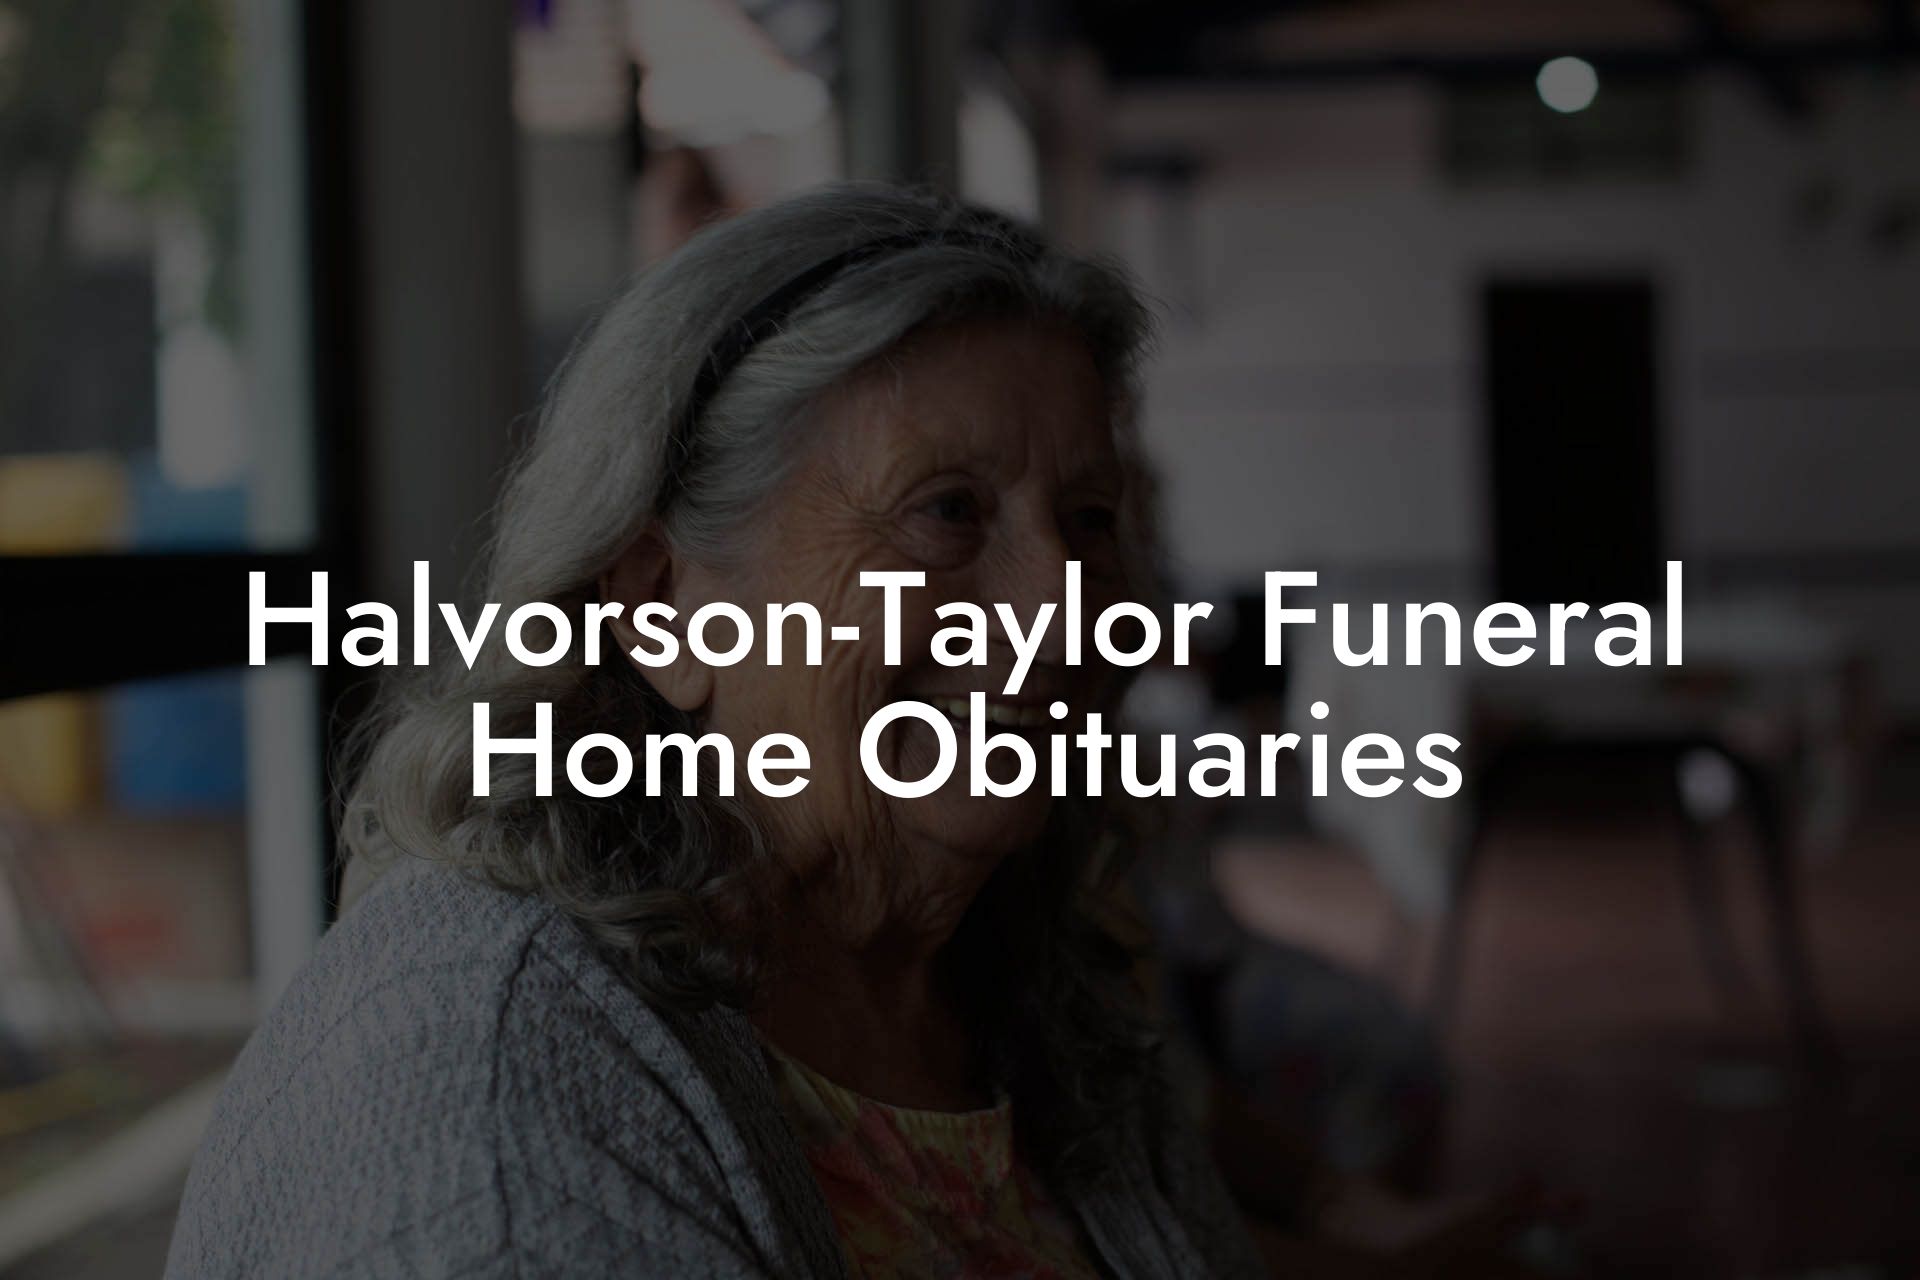 Halvorson-Taylor Funeral Home Obituaries